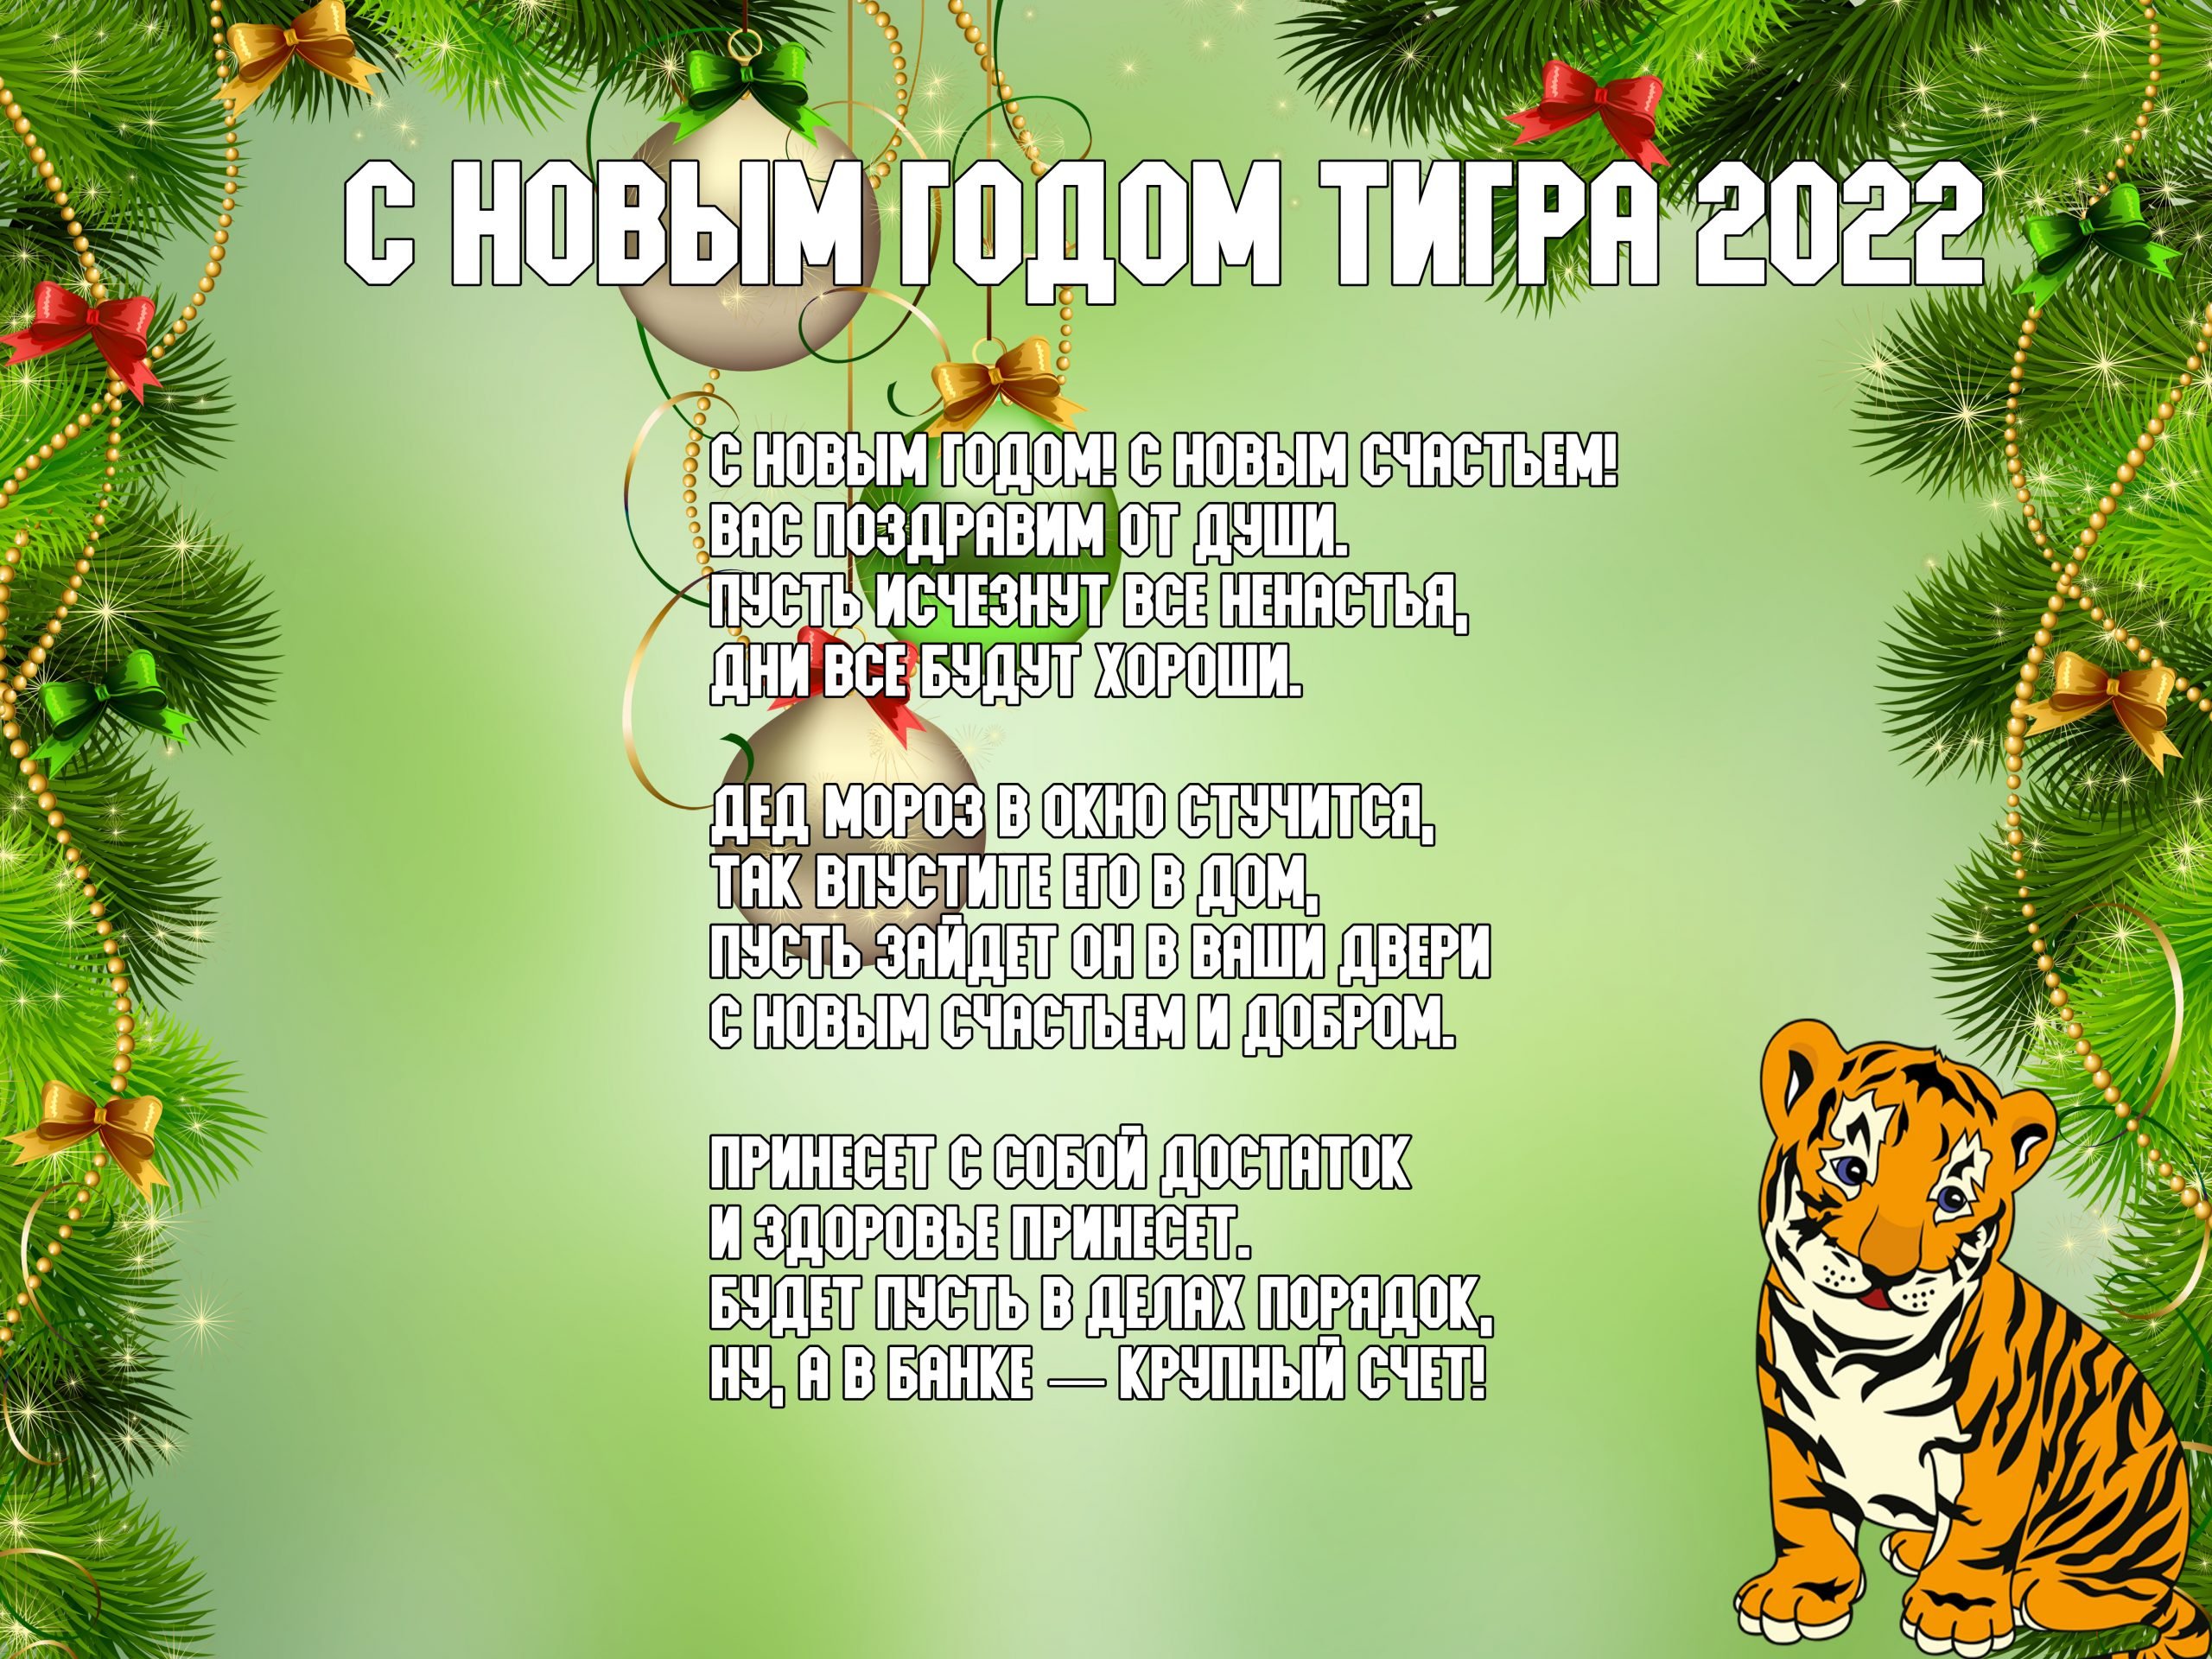 Поздравления с новым годом тигра 2022 в стихах ~